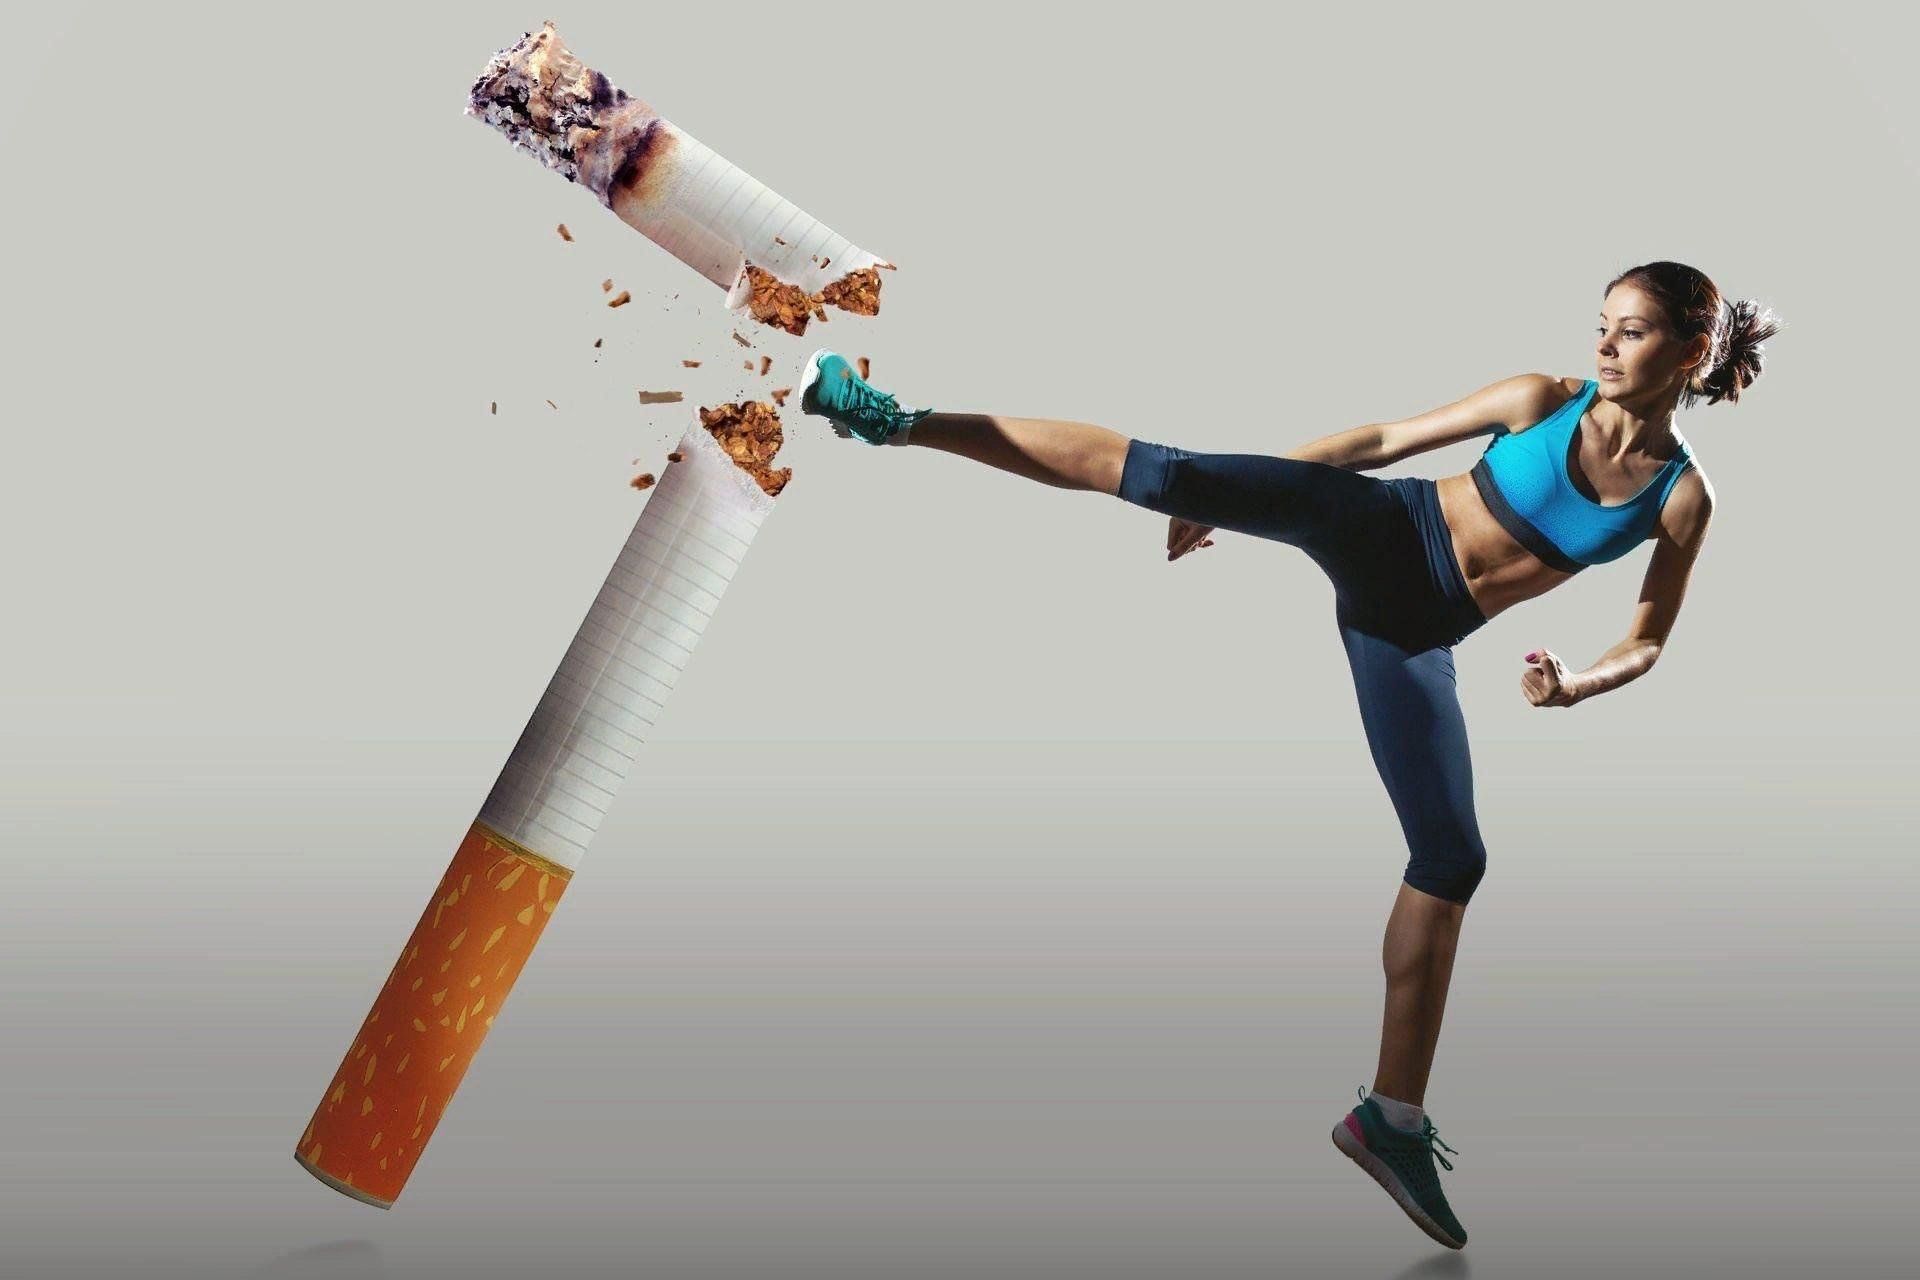 Социальная борьба. Курение и спорт. Здоровый образ жизни против курения. Спорт и вредные привычки. Спортсмены против курения.